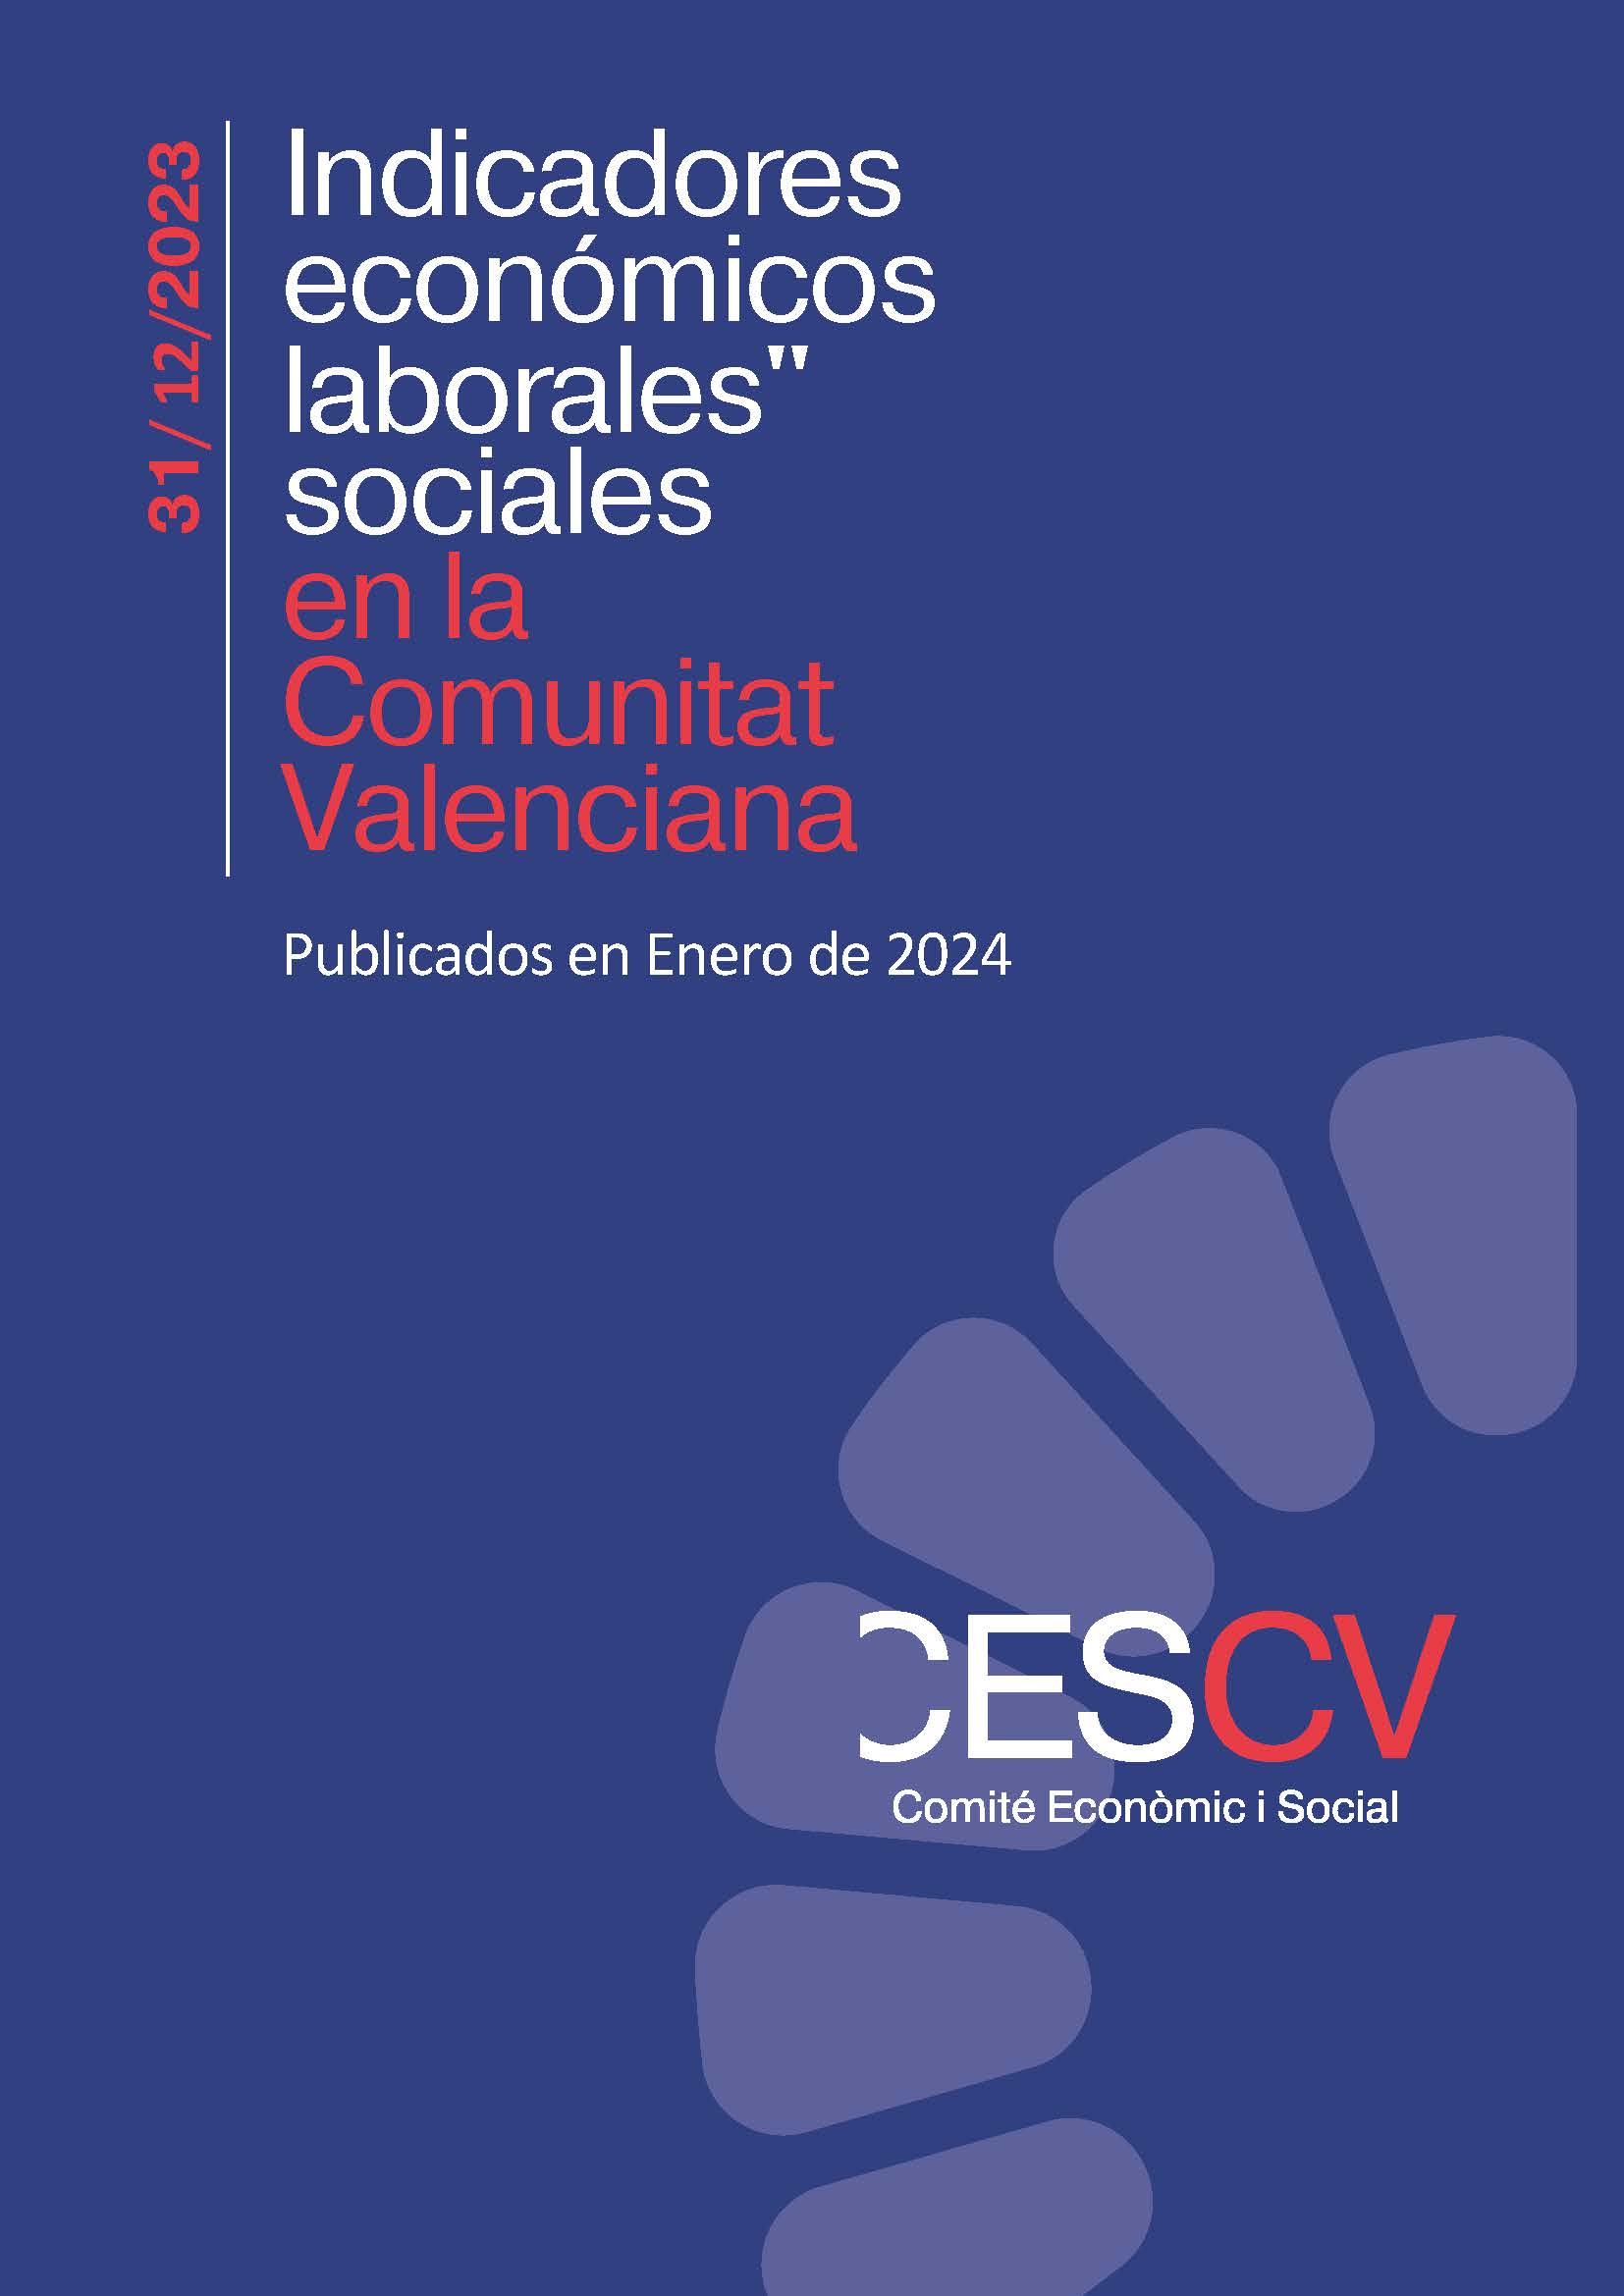 Indicadores Económicos, Laborales y Sociales. Diciembre 2023